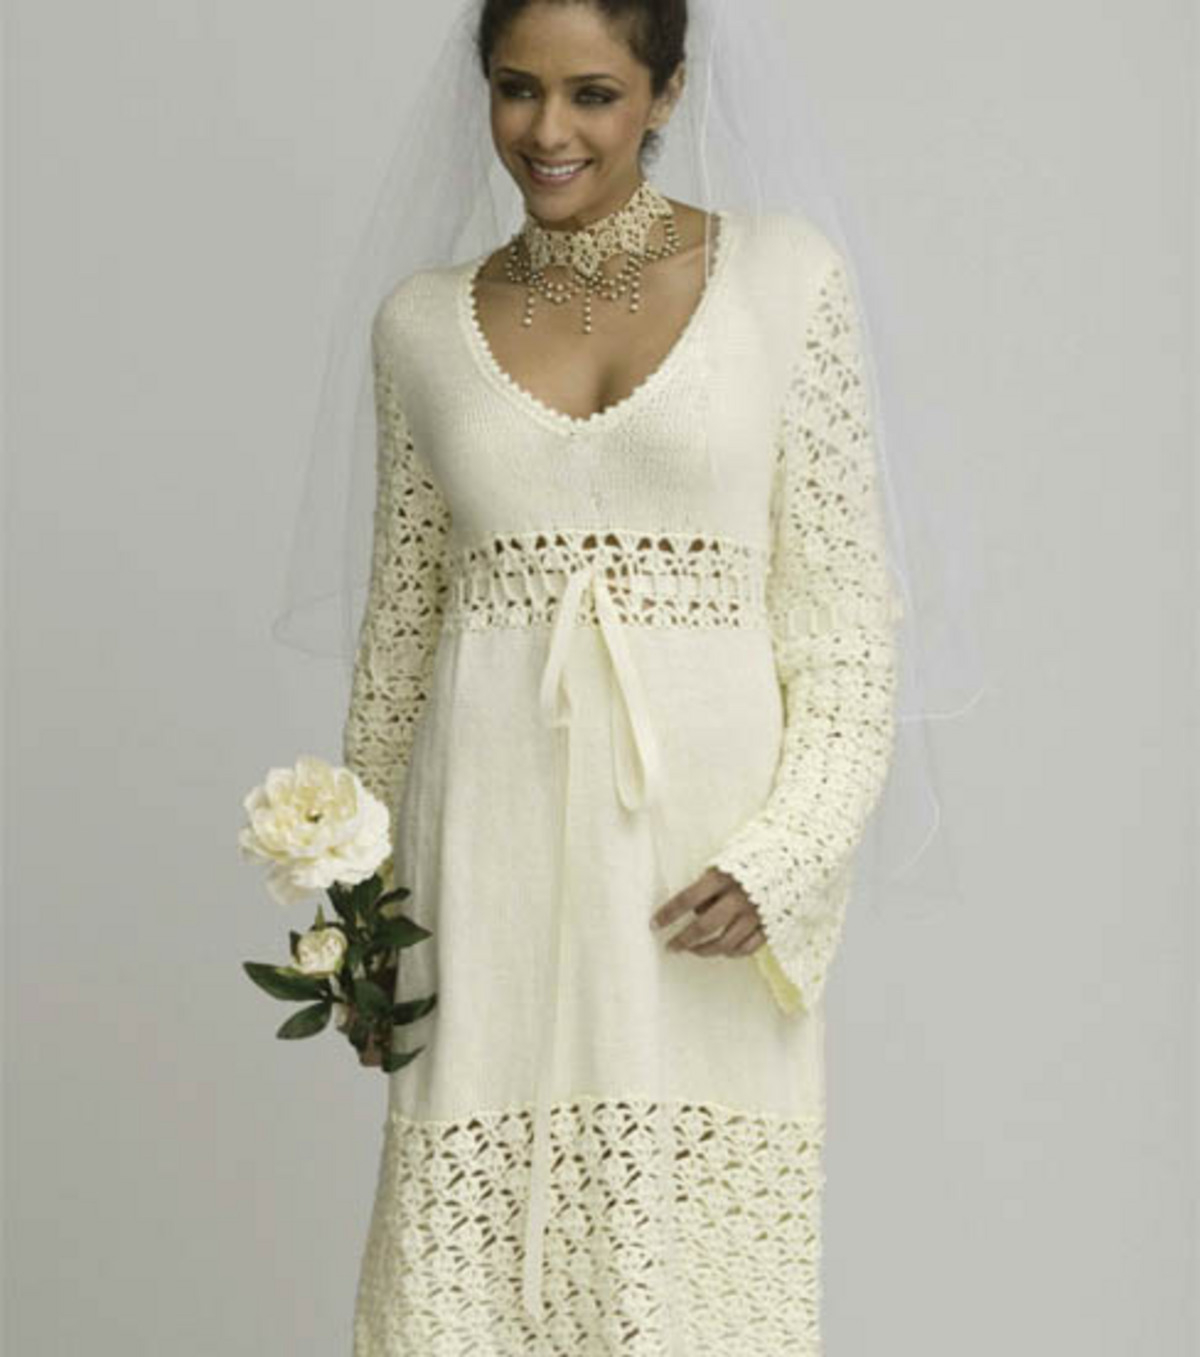 Crochet Wedding Dress Pattern Free Crochet Wedding Dress Patterns And Wedding Accessories To Crochet